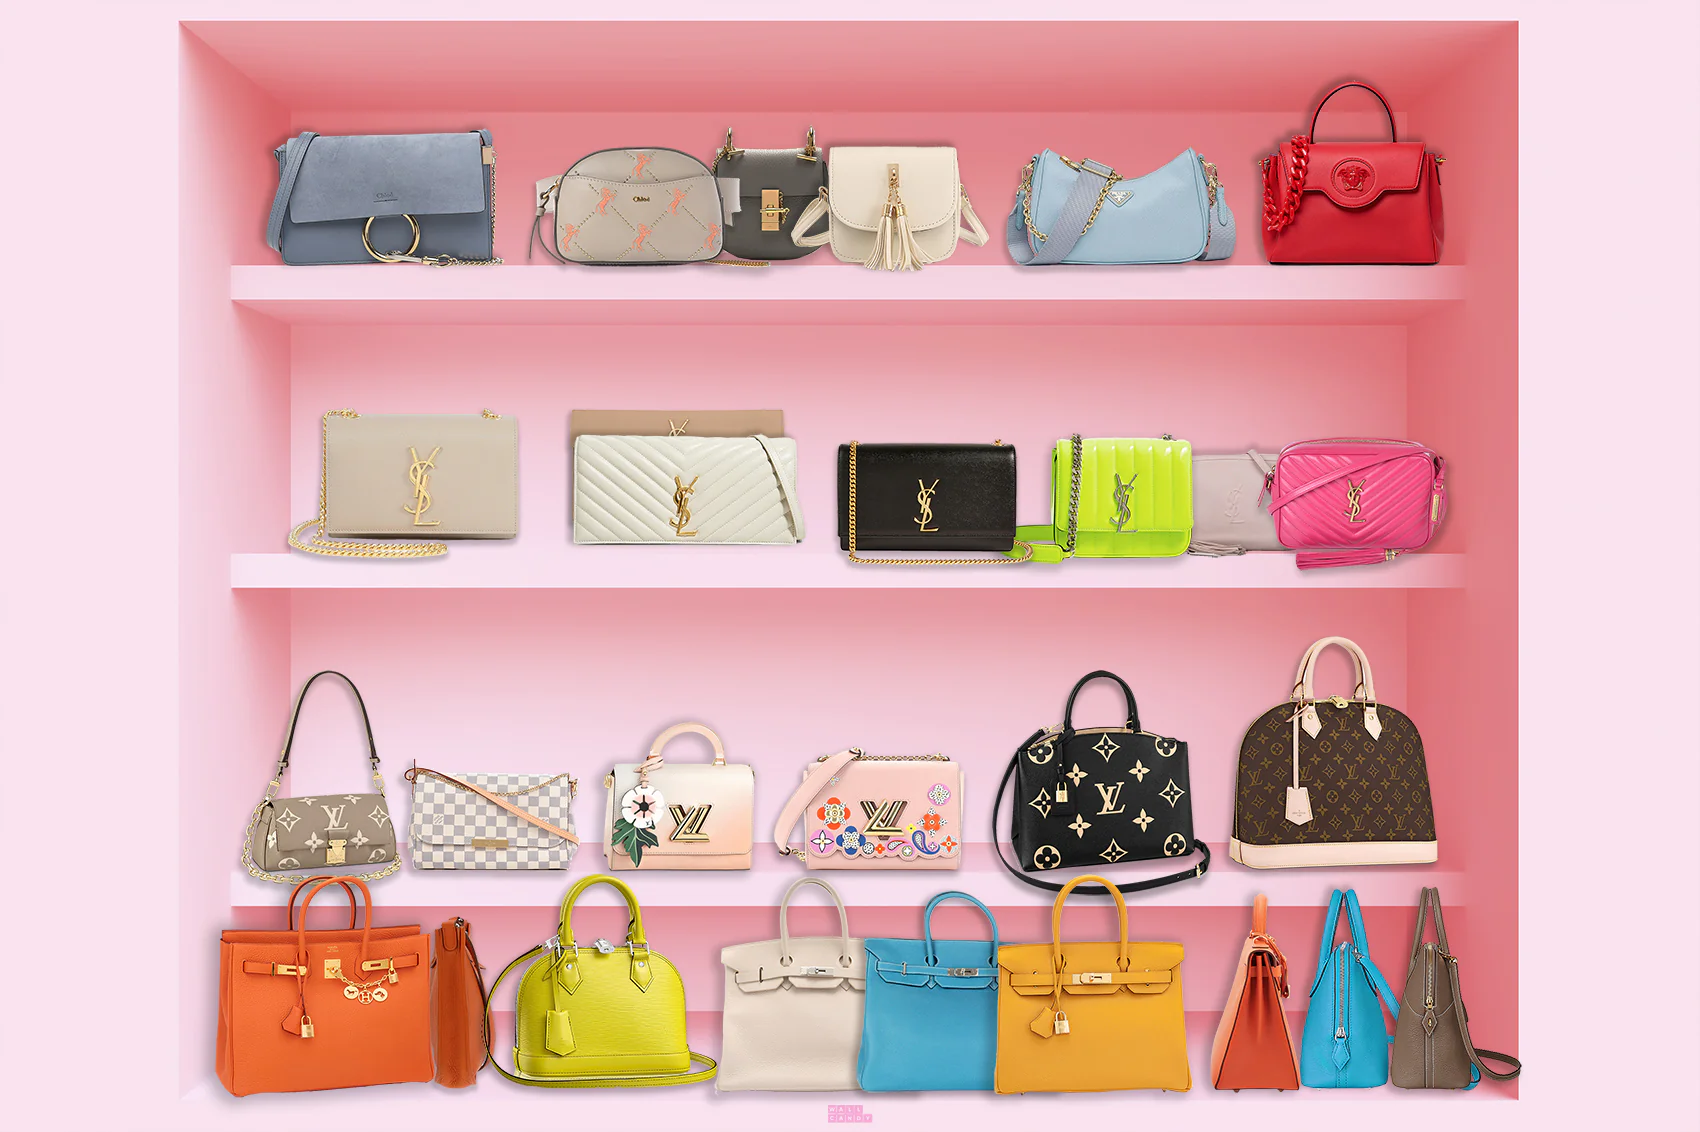 Designer Handbags in Pink Wall Art